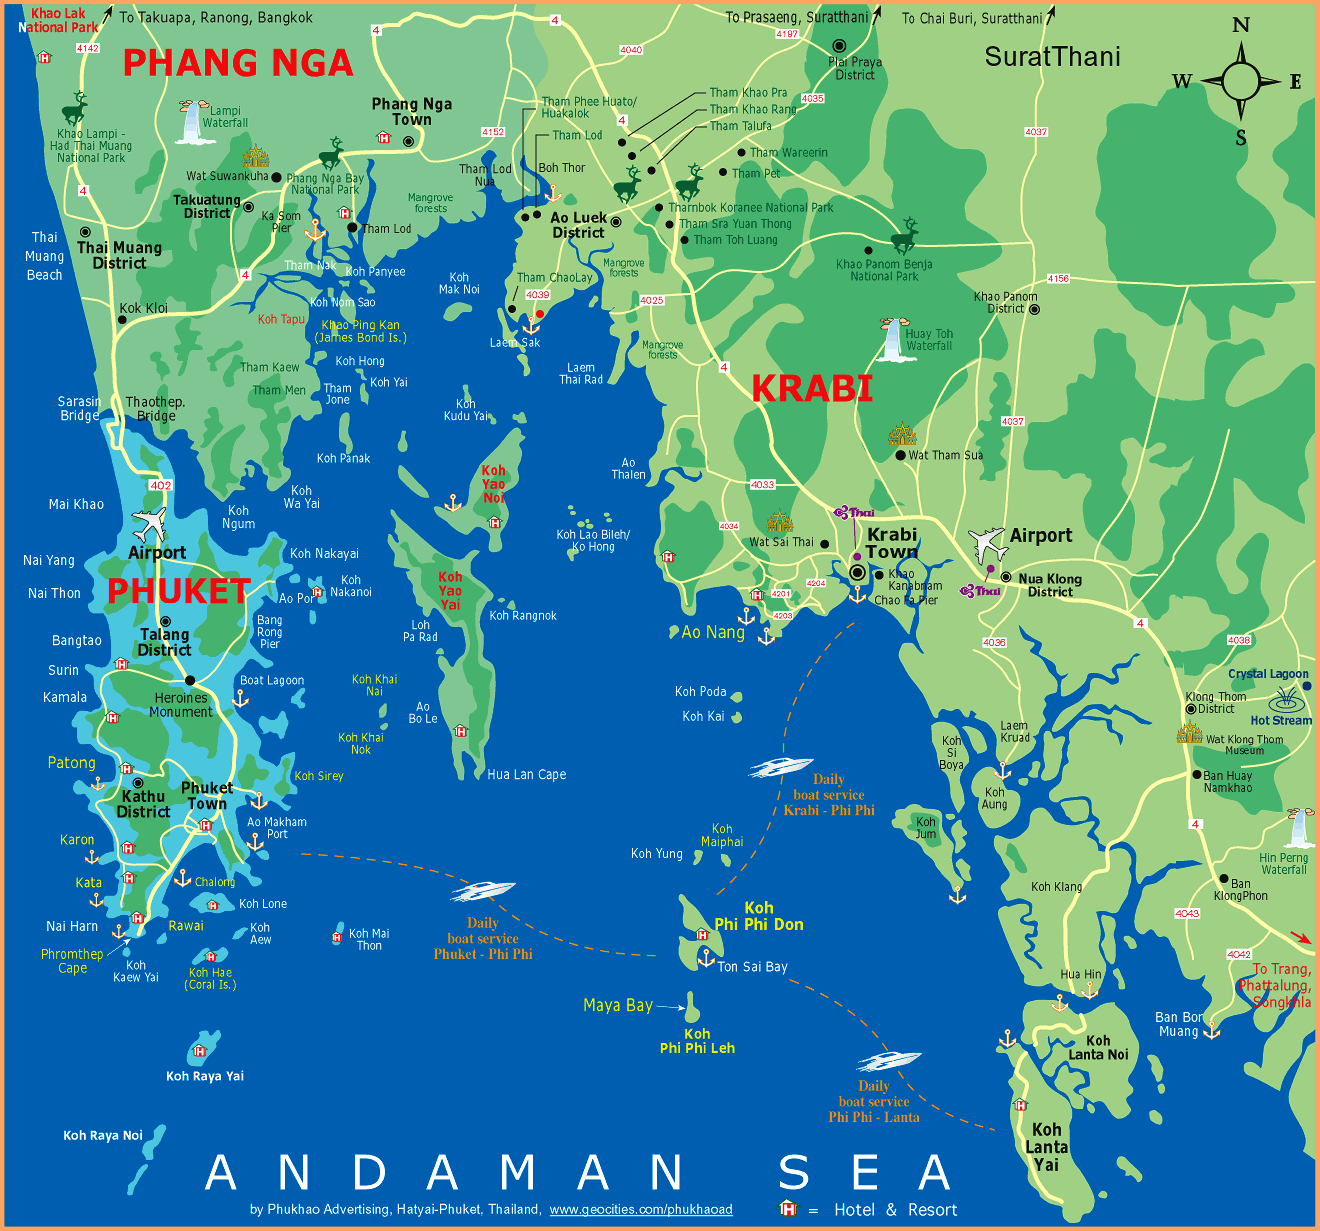 Map of Phang Nga Bay, showing the southern portion of Phang Nga Province, the island and province of Phuket, and part of Krabi Province.